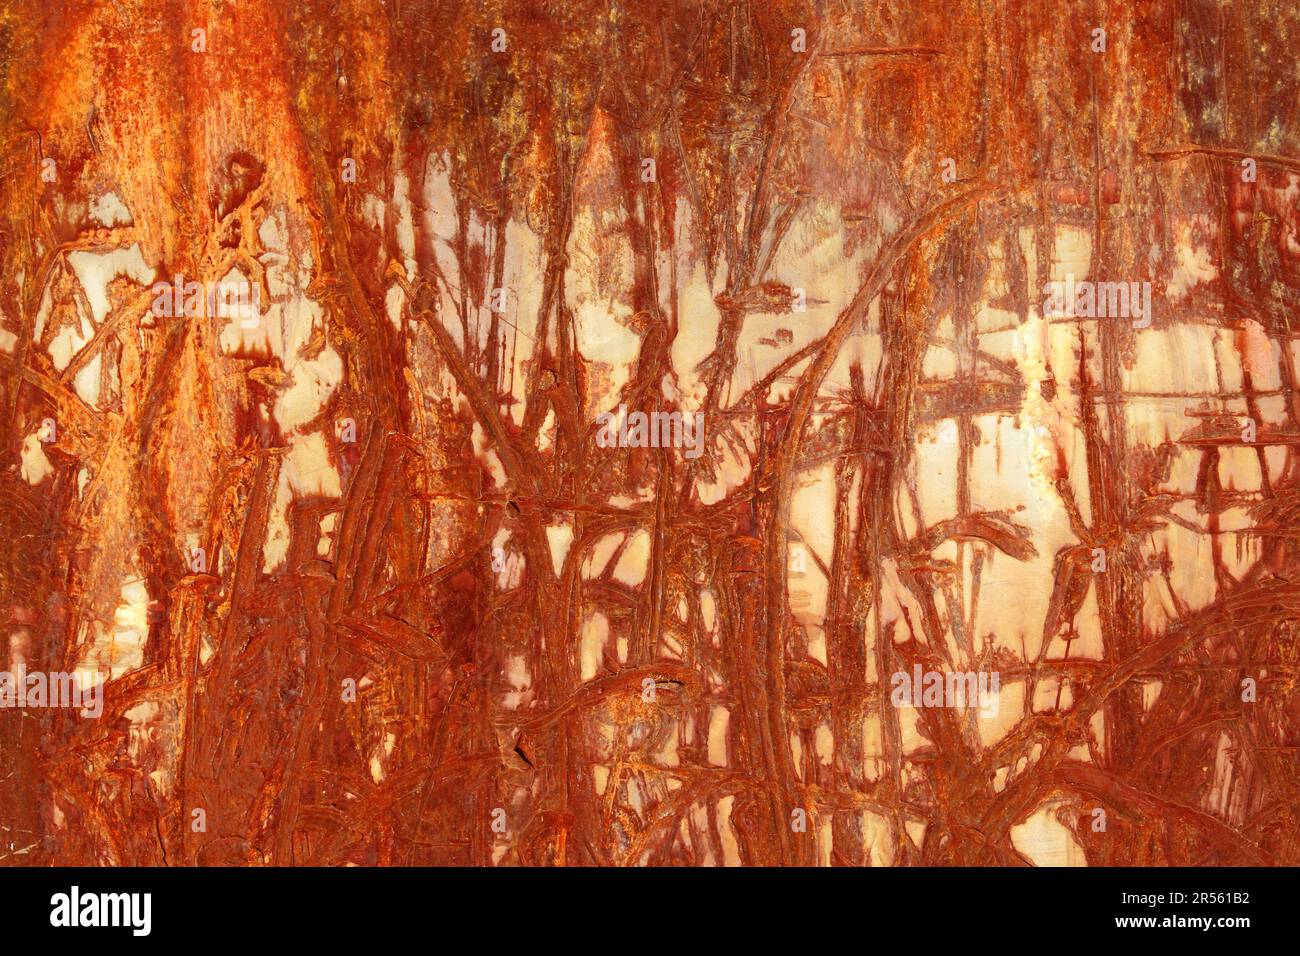 Une abstraction marron rouge de lignes et textures rouillées rayées sur une surface industrielle en métal patiné. Marques d'impact aléatoires sur un mur en acier. Apparence Banque D'Images